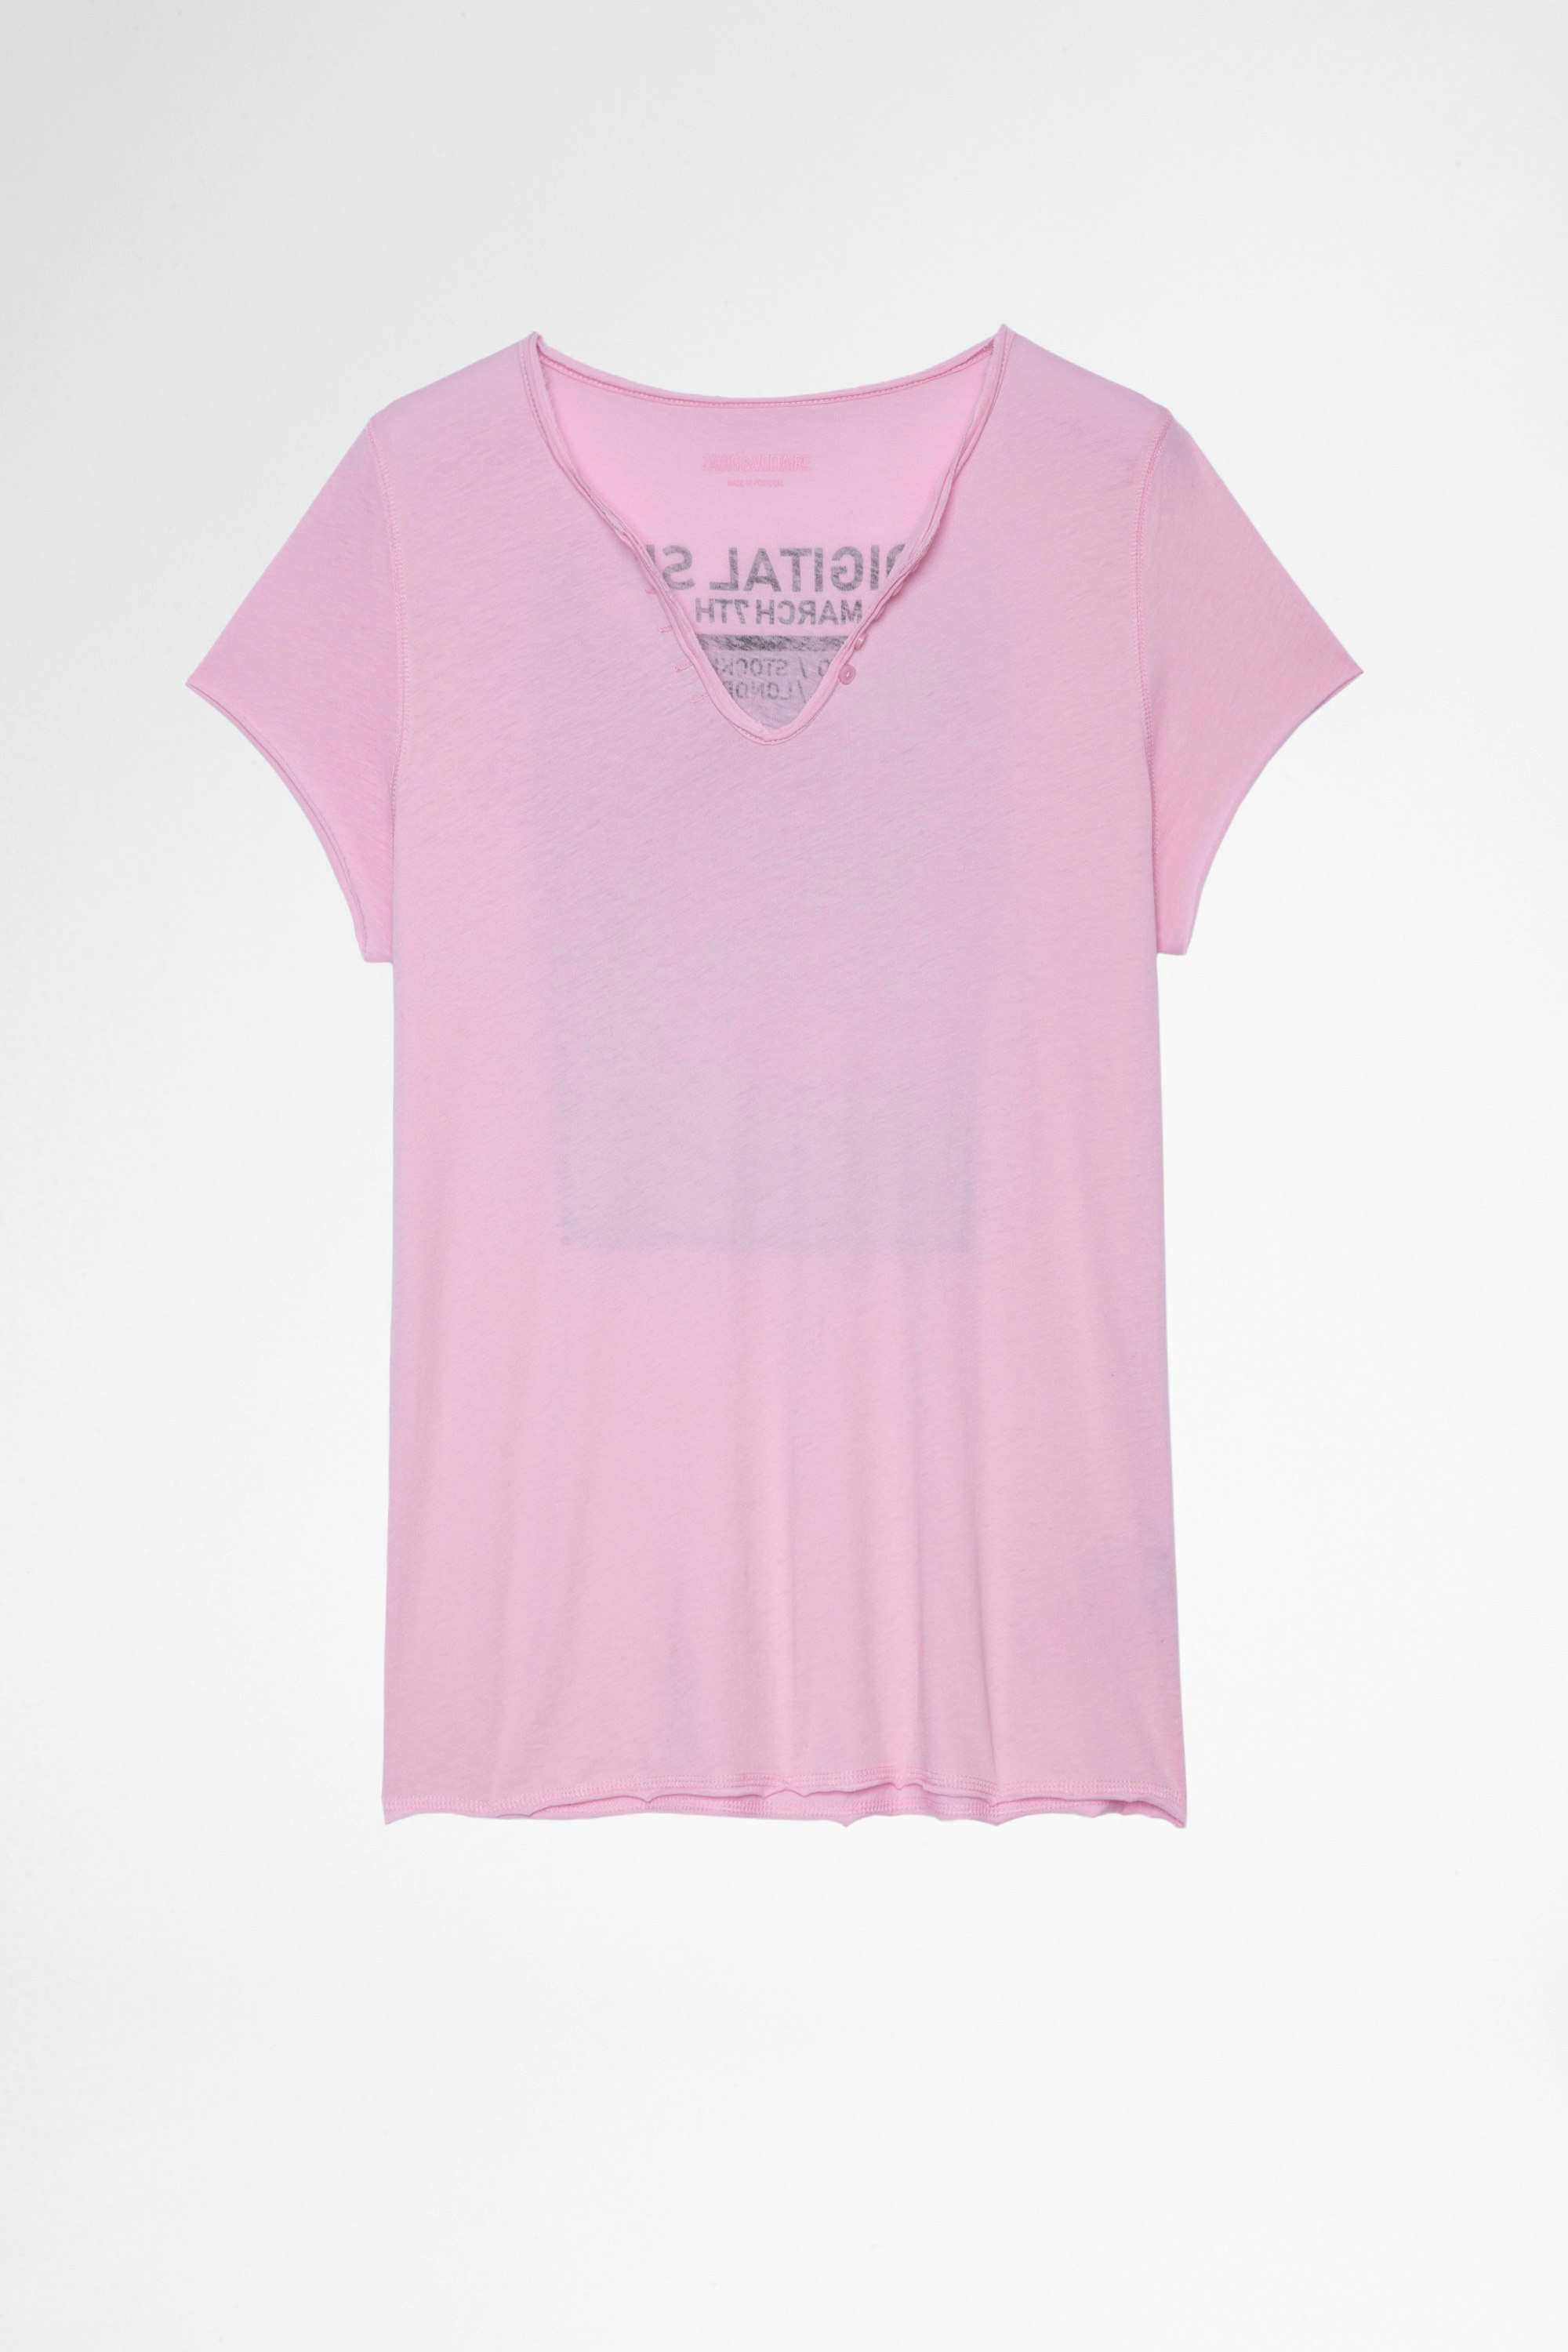 T-shirt Tunisien Photoprint T-shirt rosa in cotone con collo a serafino e stampa fotografica sul retro, donna. Reallizzato con fibre da agricoltura biologica